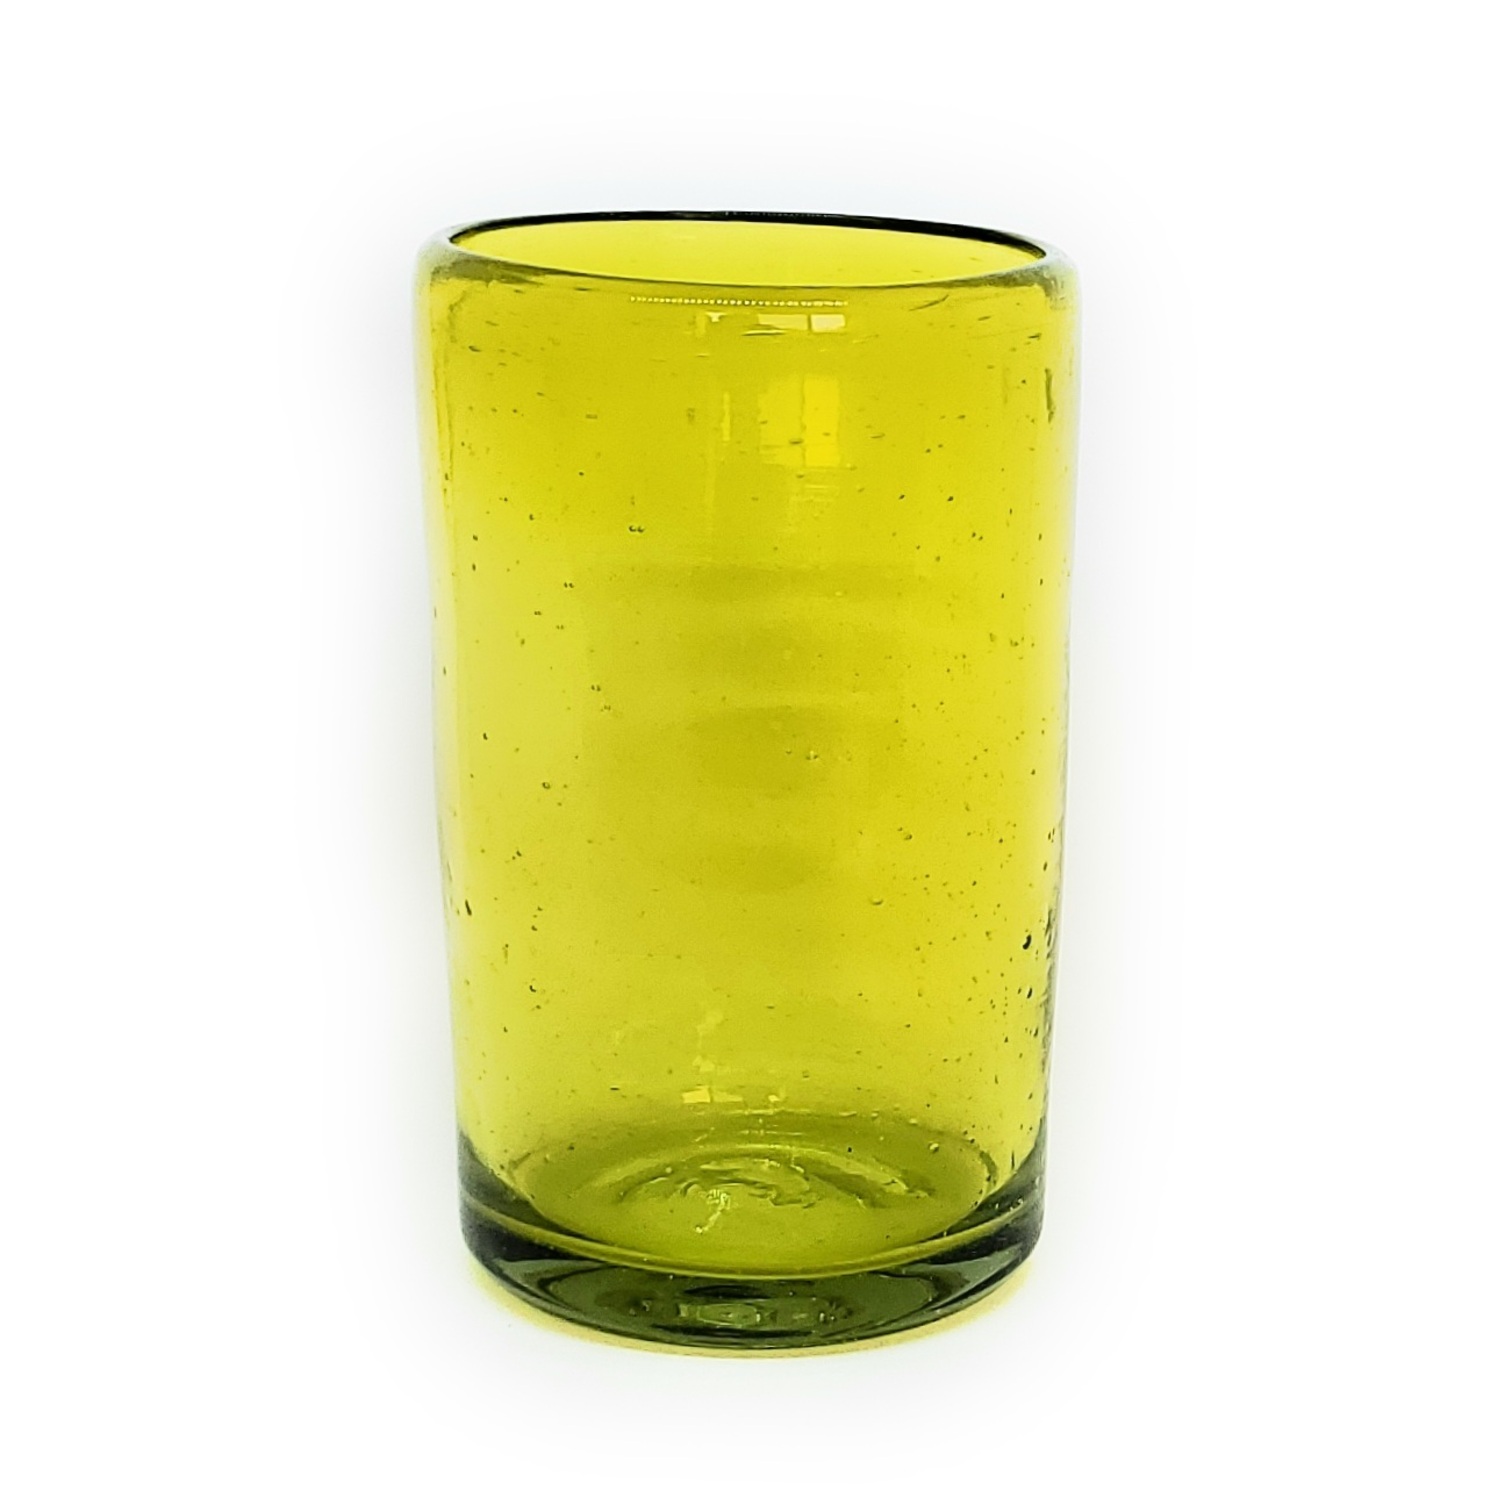 VIDRIO SOPLADO / Juego de 6 vasos grandes color amarillos / Éstos artesanales vasos le darán un toque clásico a su bebida favorita.